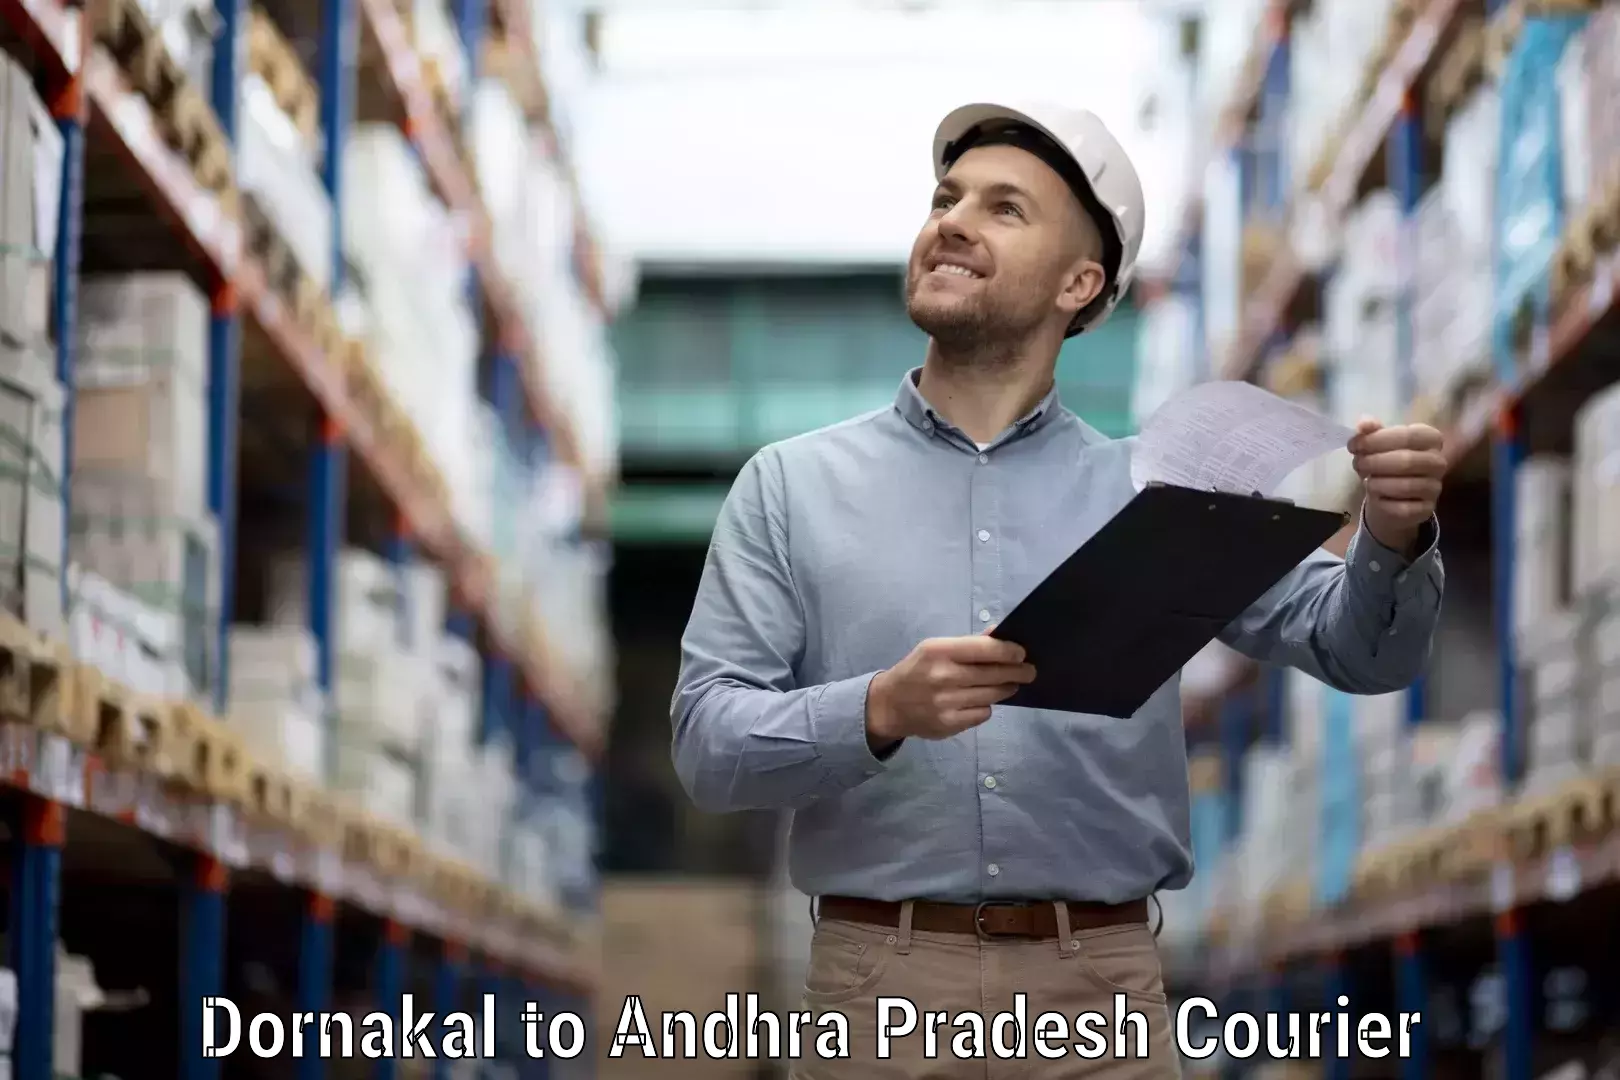 Courier service comparison Dornakal to Andhra Pradesh